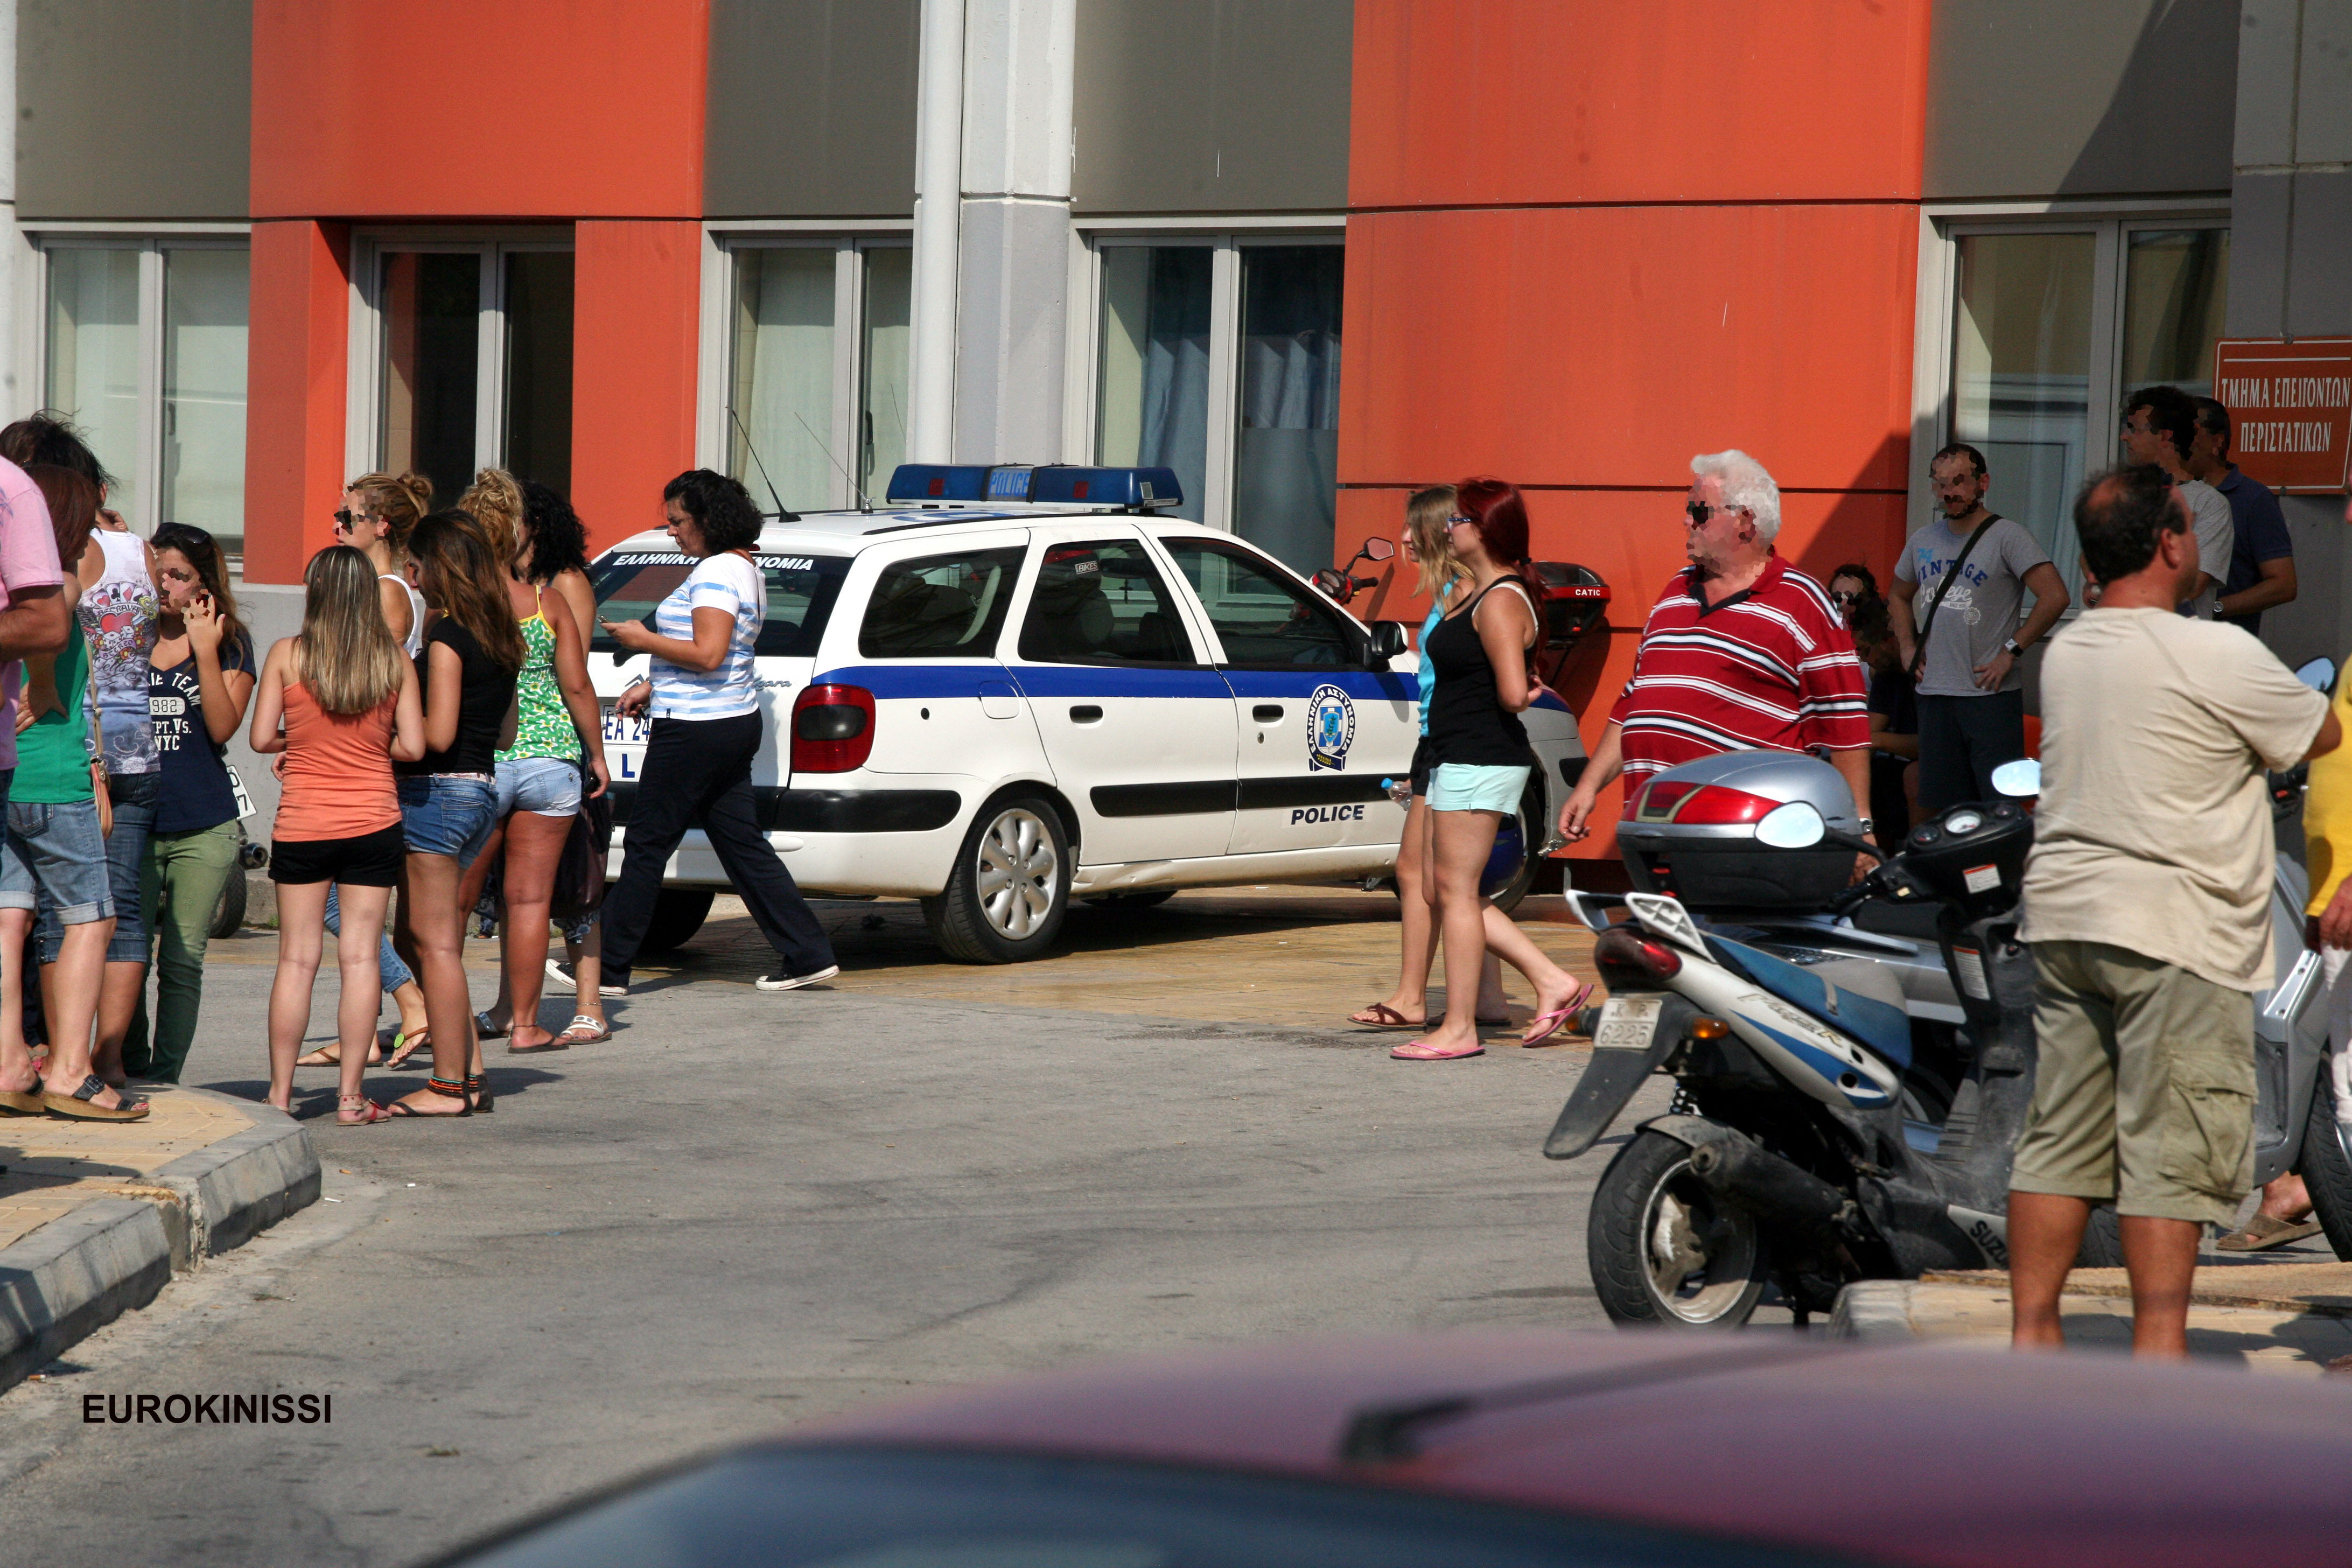 Κόσμος συγκεντρωμένος έξω από το νοσοκομείο όπου αρχικά μεταφέρθηκε το άτυχο κορίτσι - ΦΩΤΟΓΡΑΦΙΑ EUROKINISSI